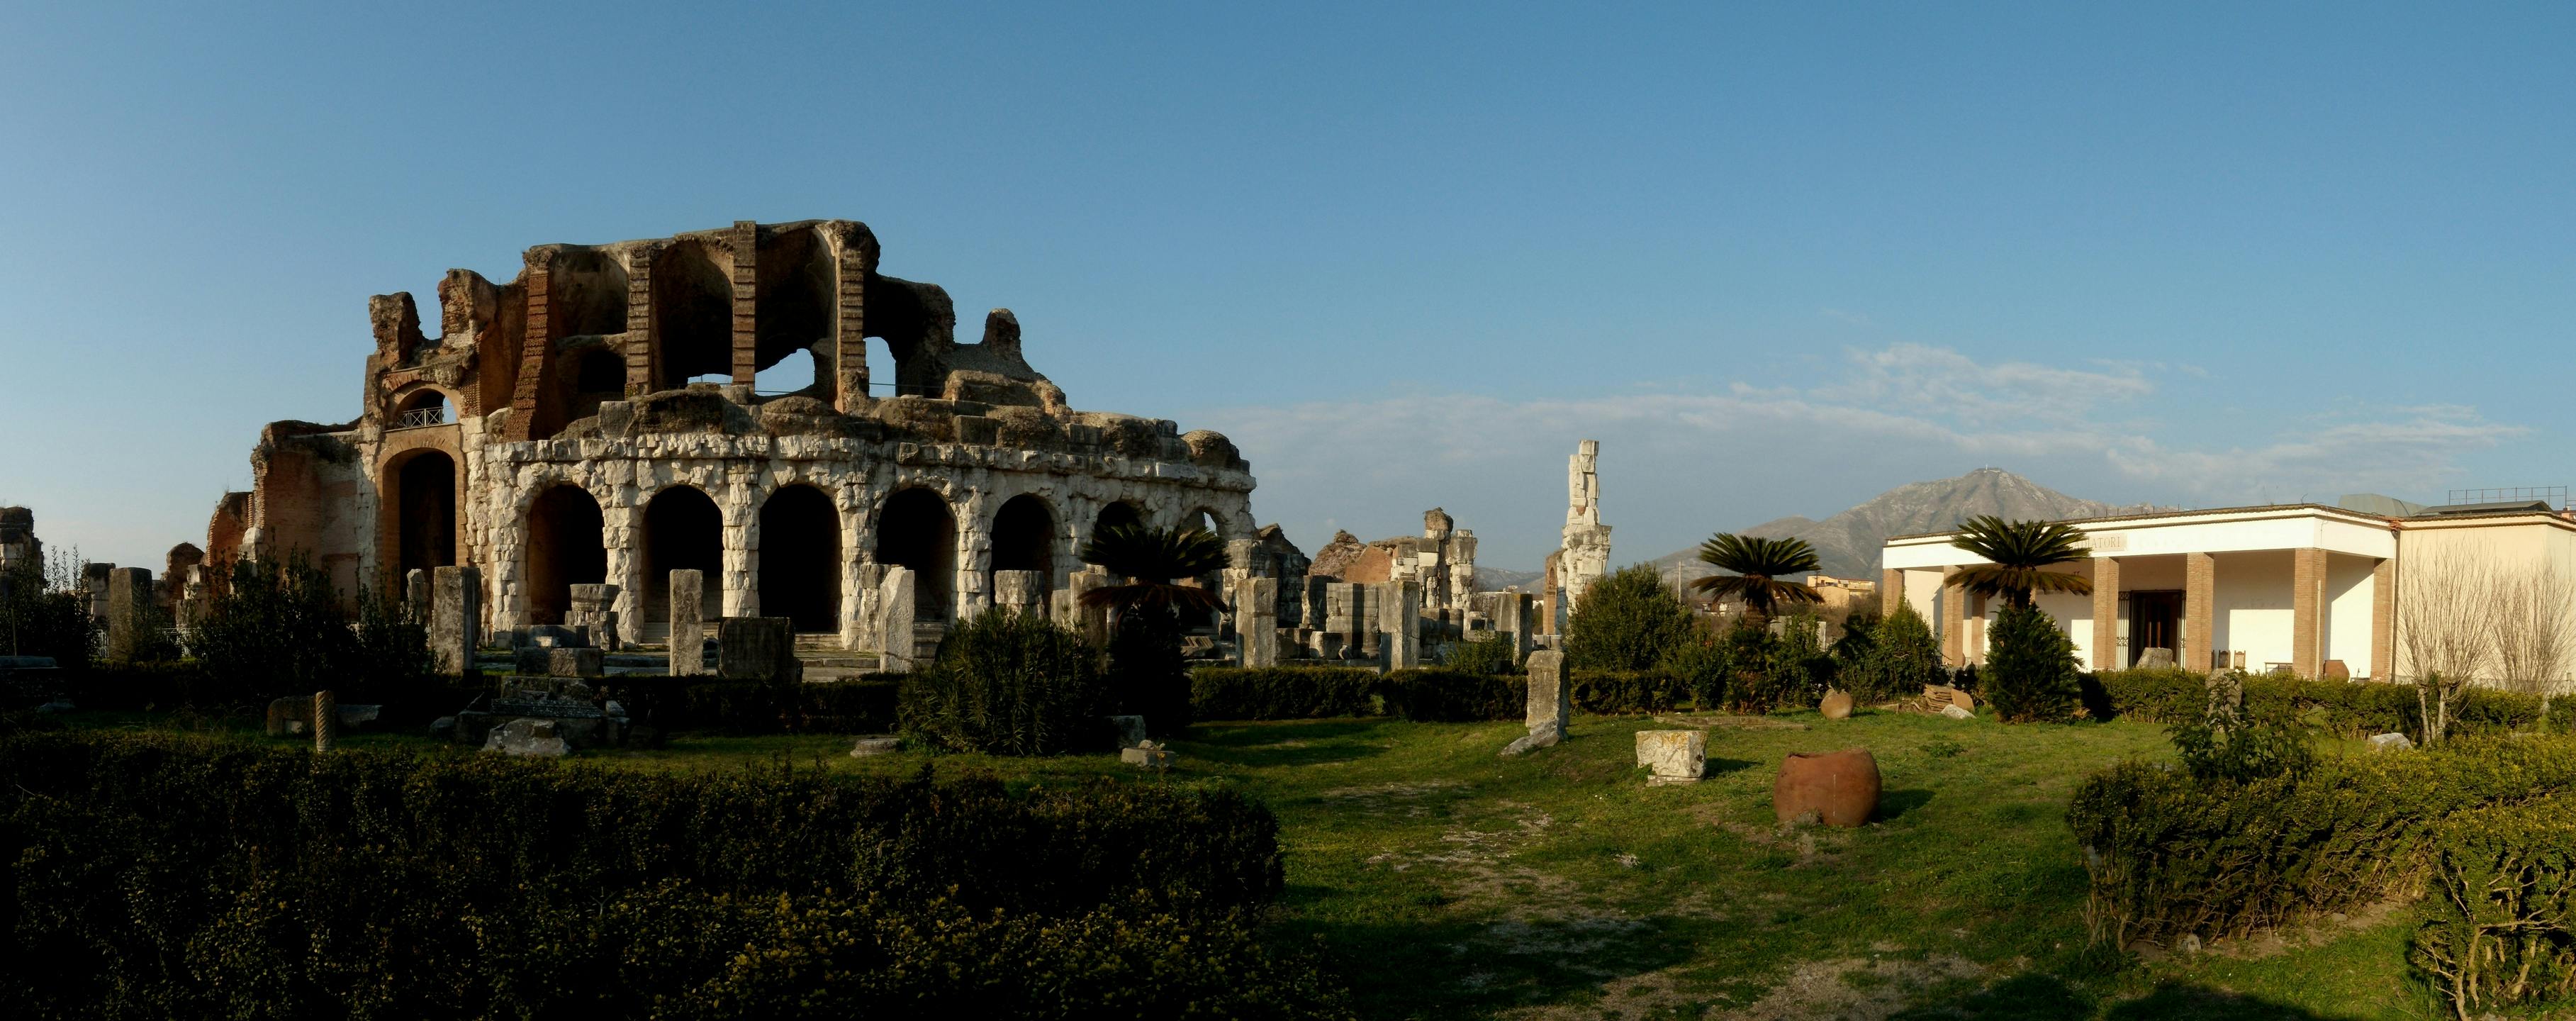 Capua amfitheater en museum met archeoloog